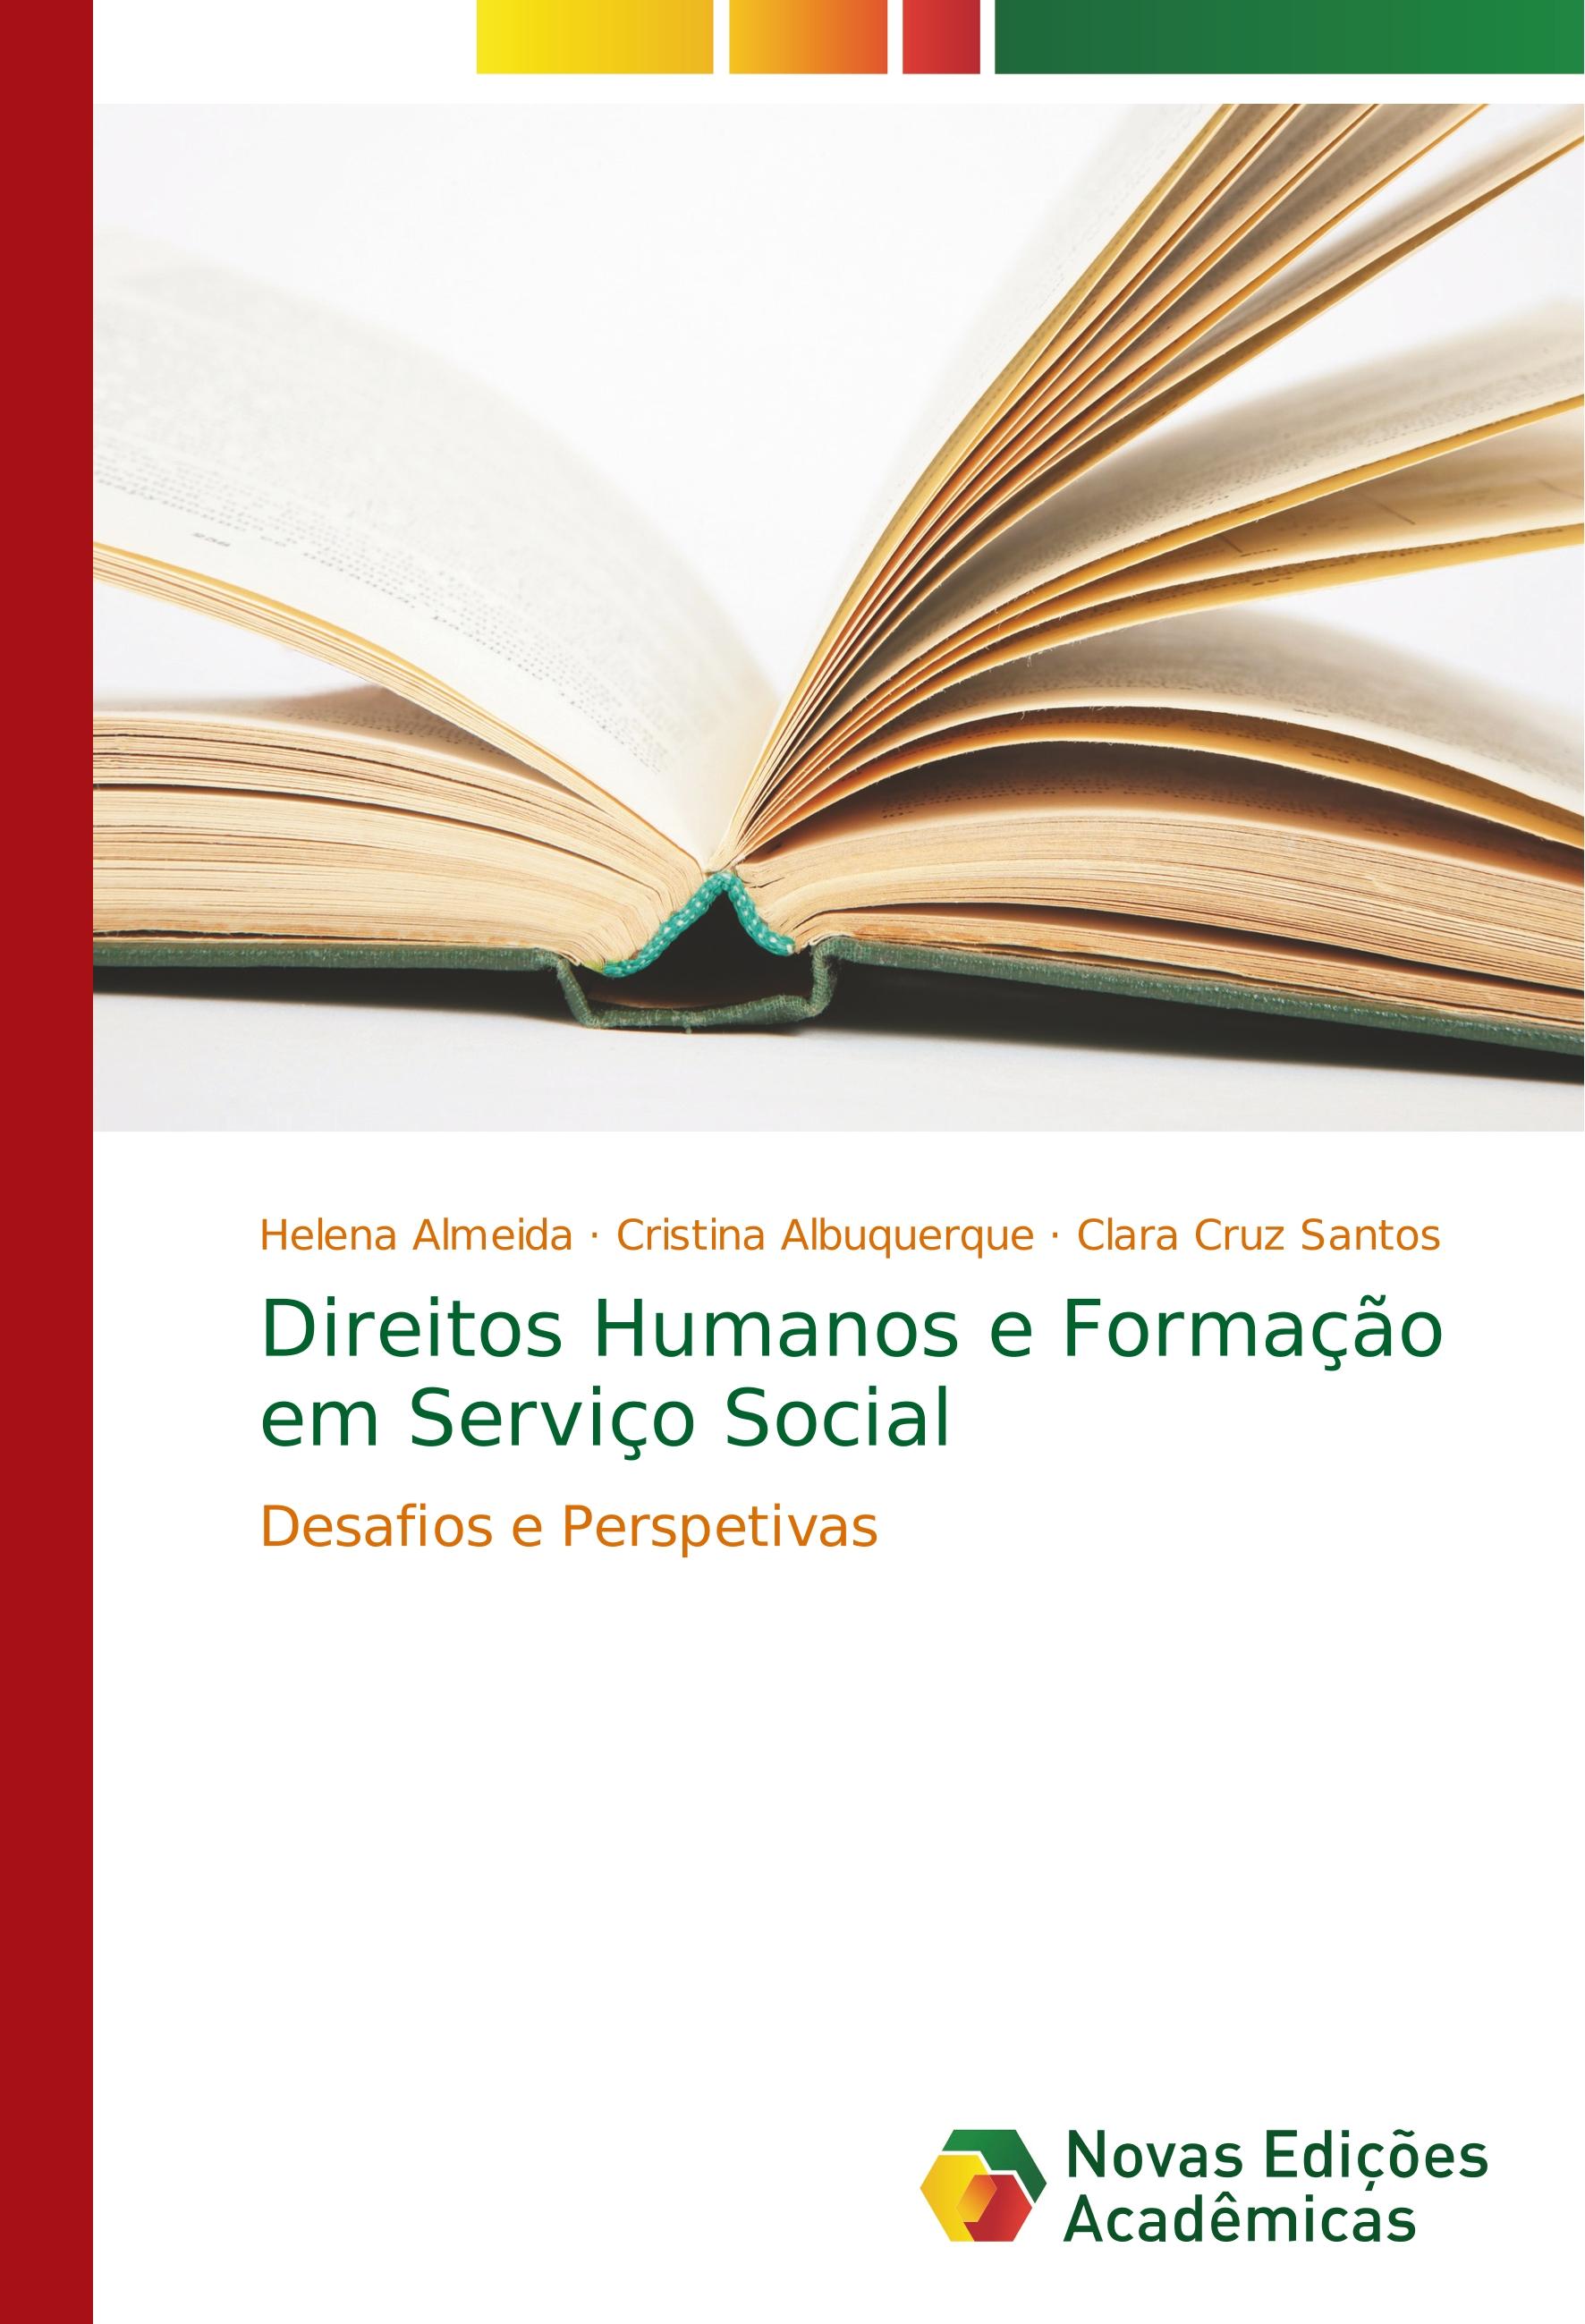 Direitos Humanos e Formação em Serviço Social - Helena Almeida Cristina Albuquerque Clara Cruz Santos